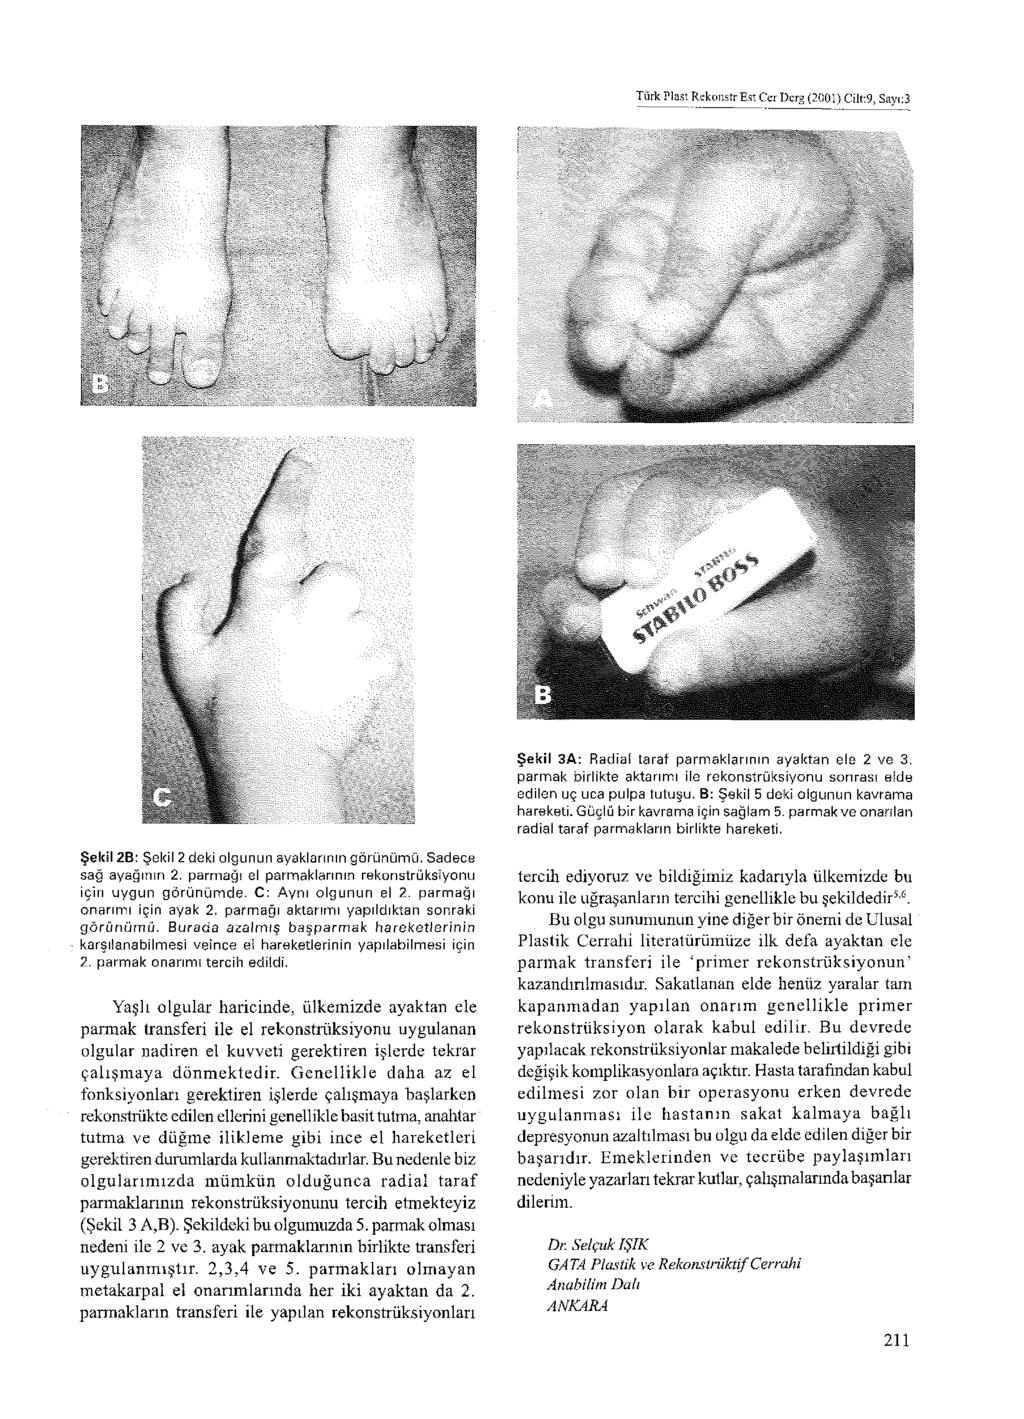 Türk Plast RekoııstrEst CerDcrg (2001) Cilt:9, Sayı:3 Şekil 3A: Radial taraf parmaklarının ayaktan ele 2 ve 3. parmak birlikte aktarımı ile rekonstrüksiyonu sonrası elde edilen uç uca pulpa tutuşu.